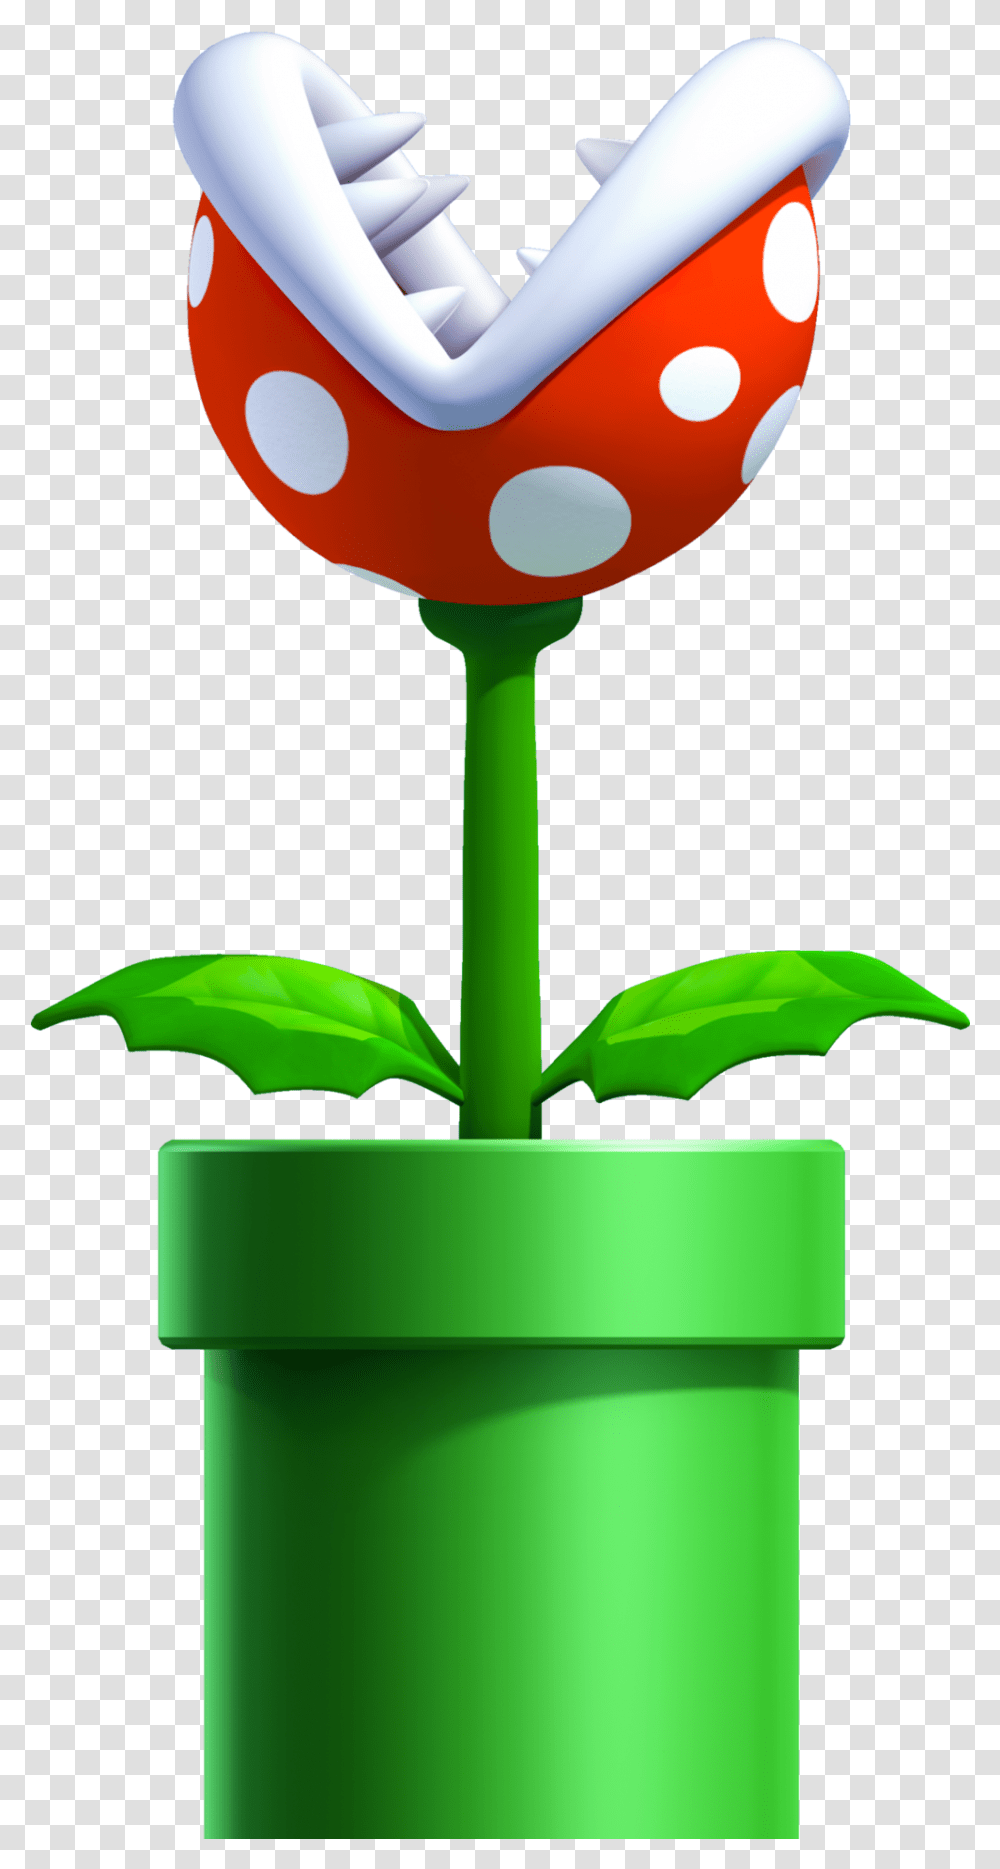 Super Mario Piranha Plant, Flower, Blossom, Pond Lily, Sprout Transparent Png